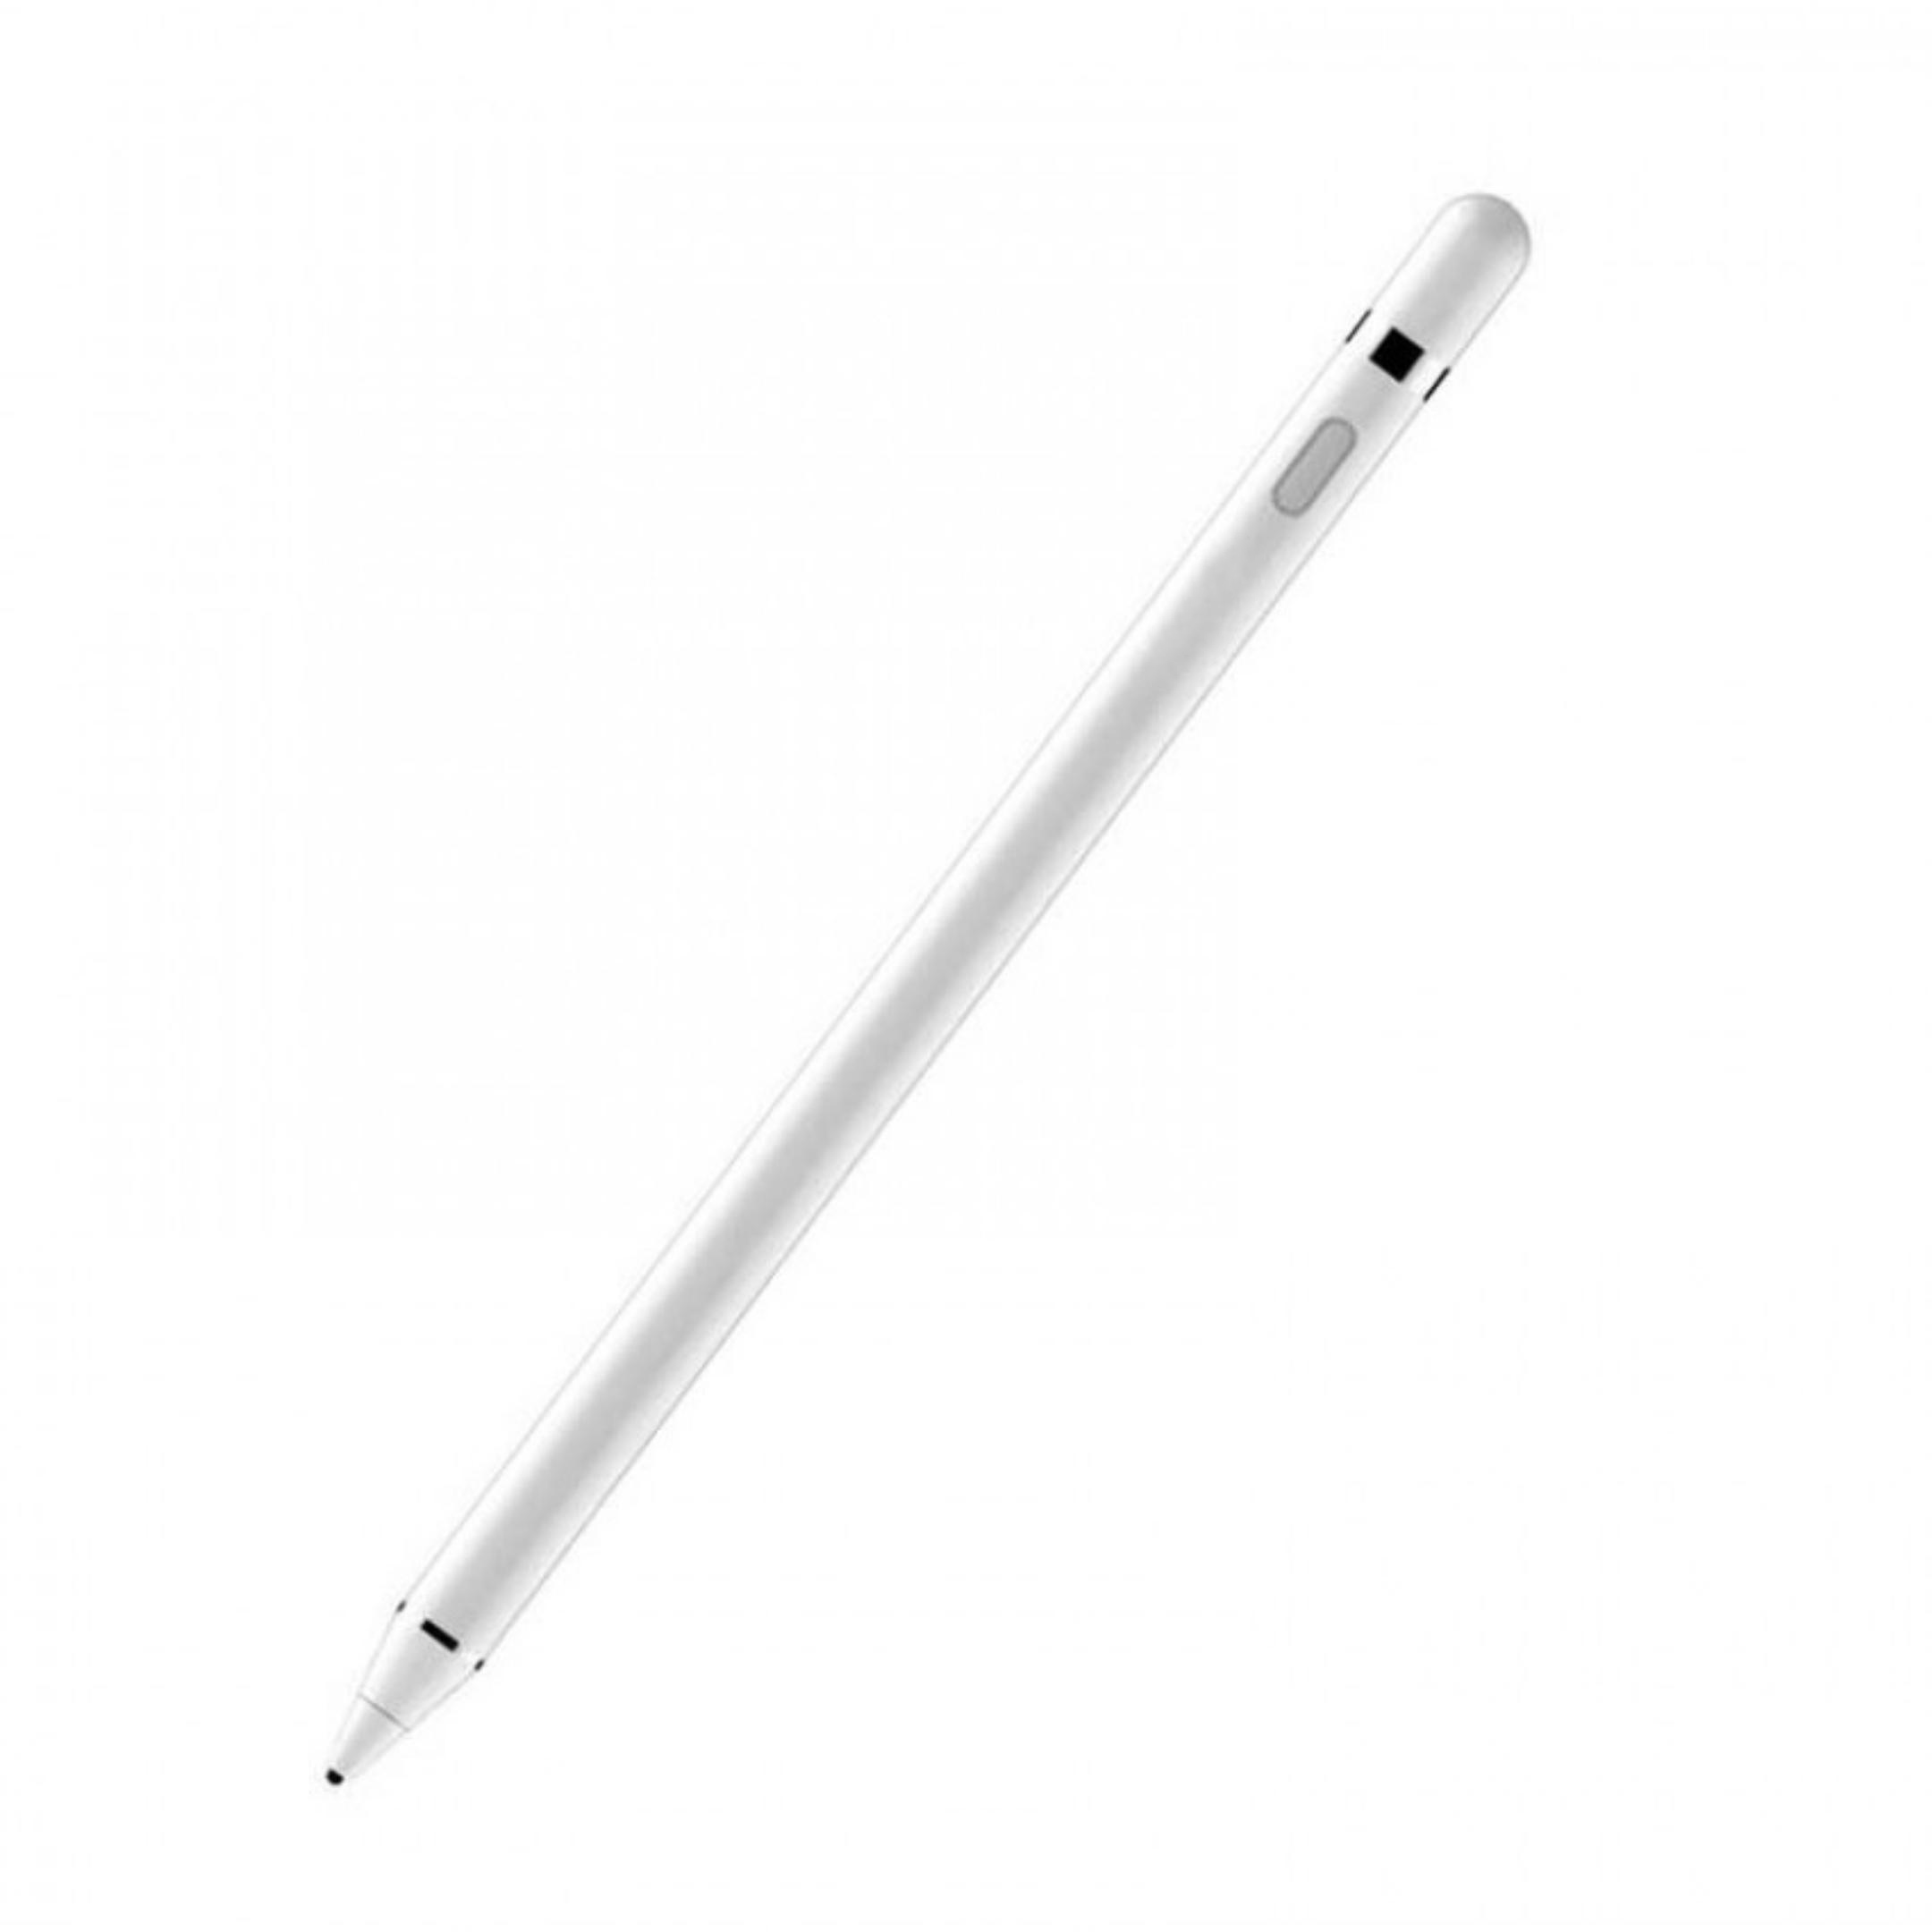 قلم لمسی گرین مدل Universal Pencil